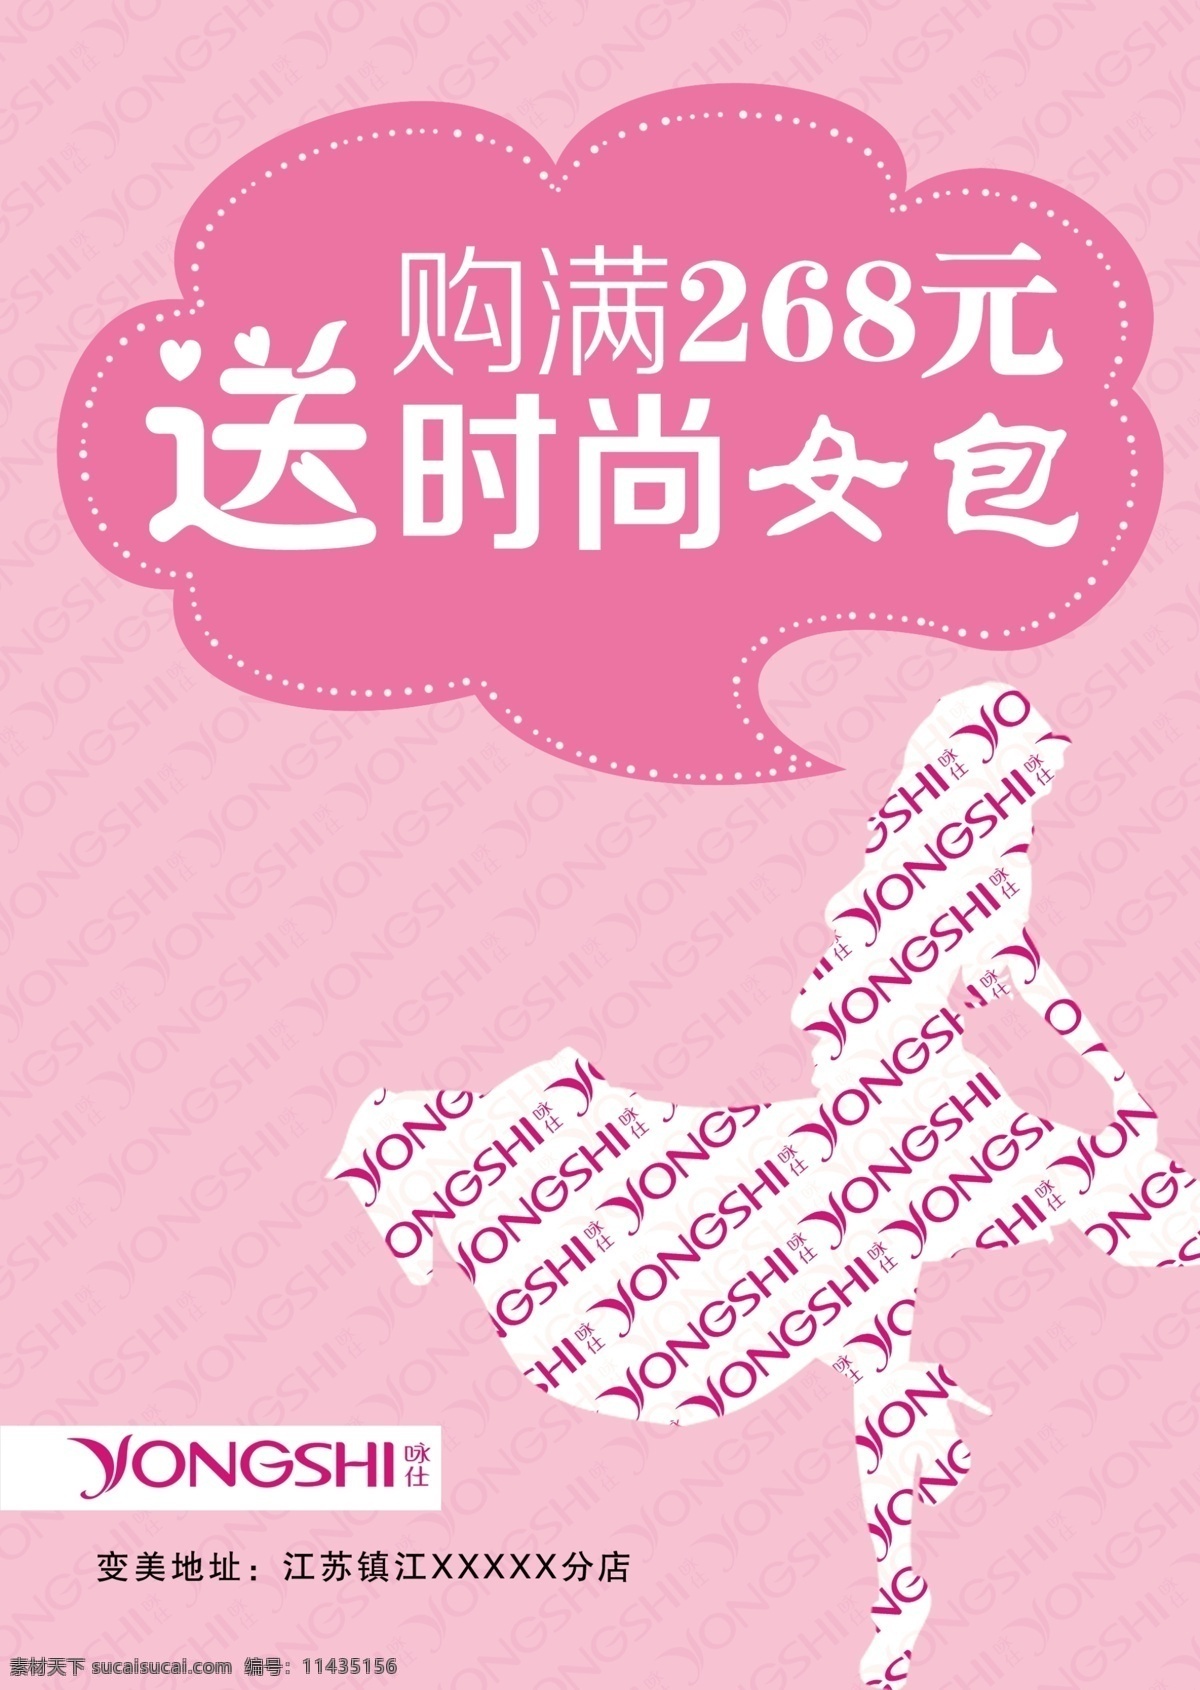 女装 海报 粉红 广告设计模板 礼品 女人 女装海报 源文件 咏仕 其他海报设计